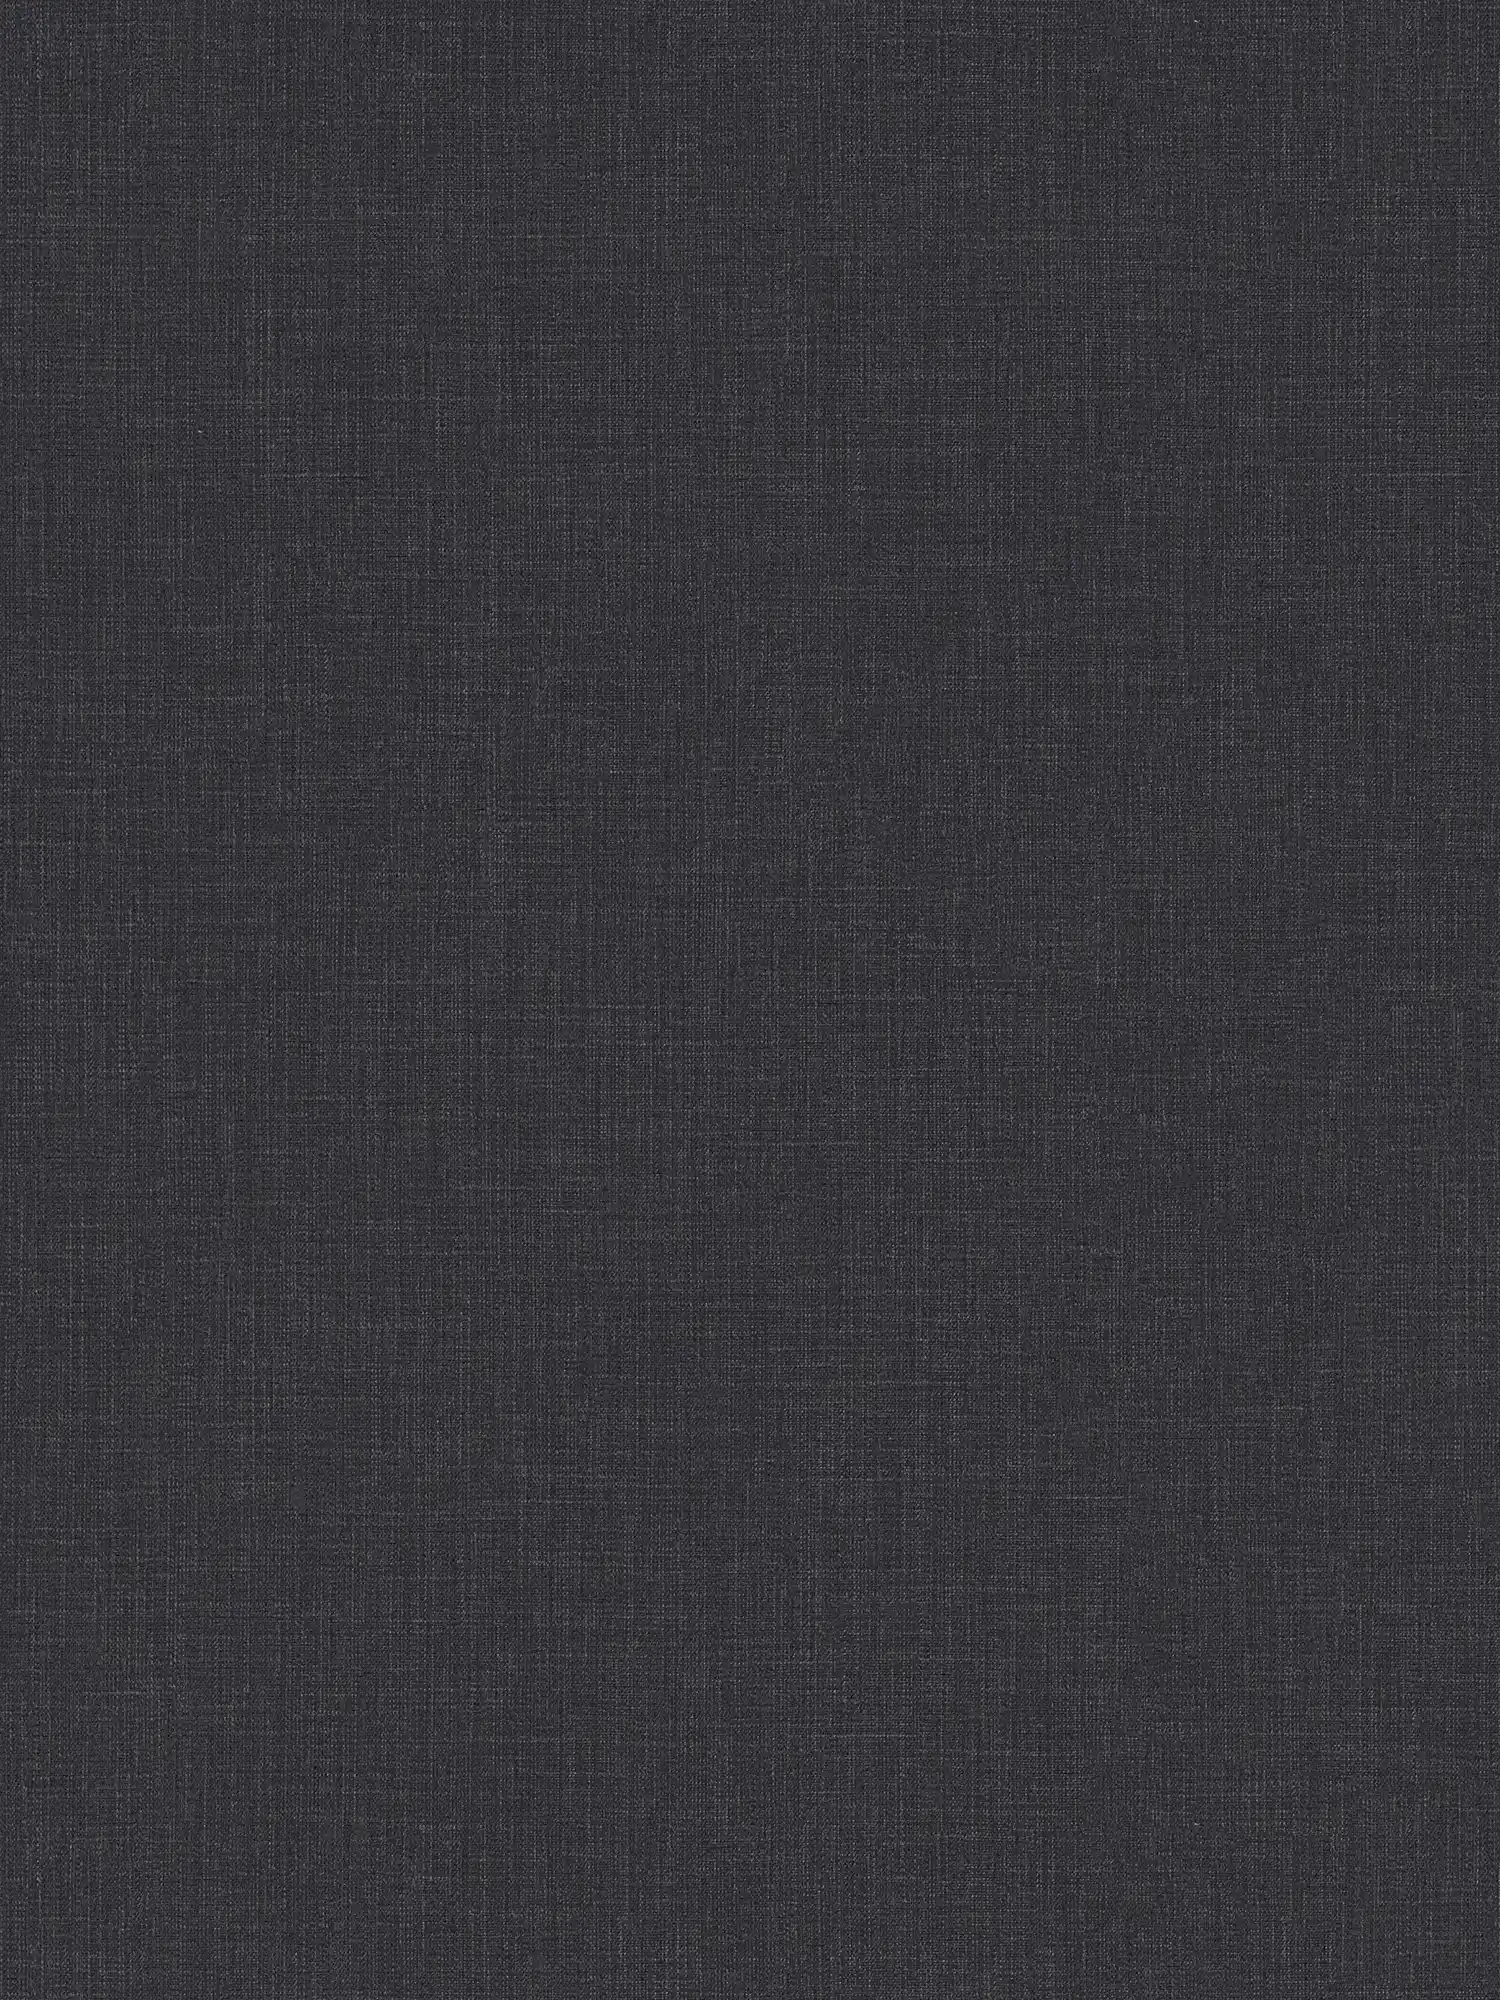 Papier peint intissé chiné aspect textile - bleu, gris, blanc
